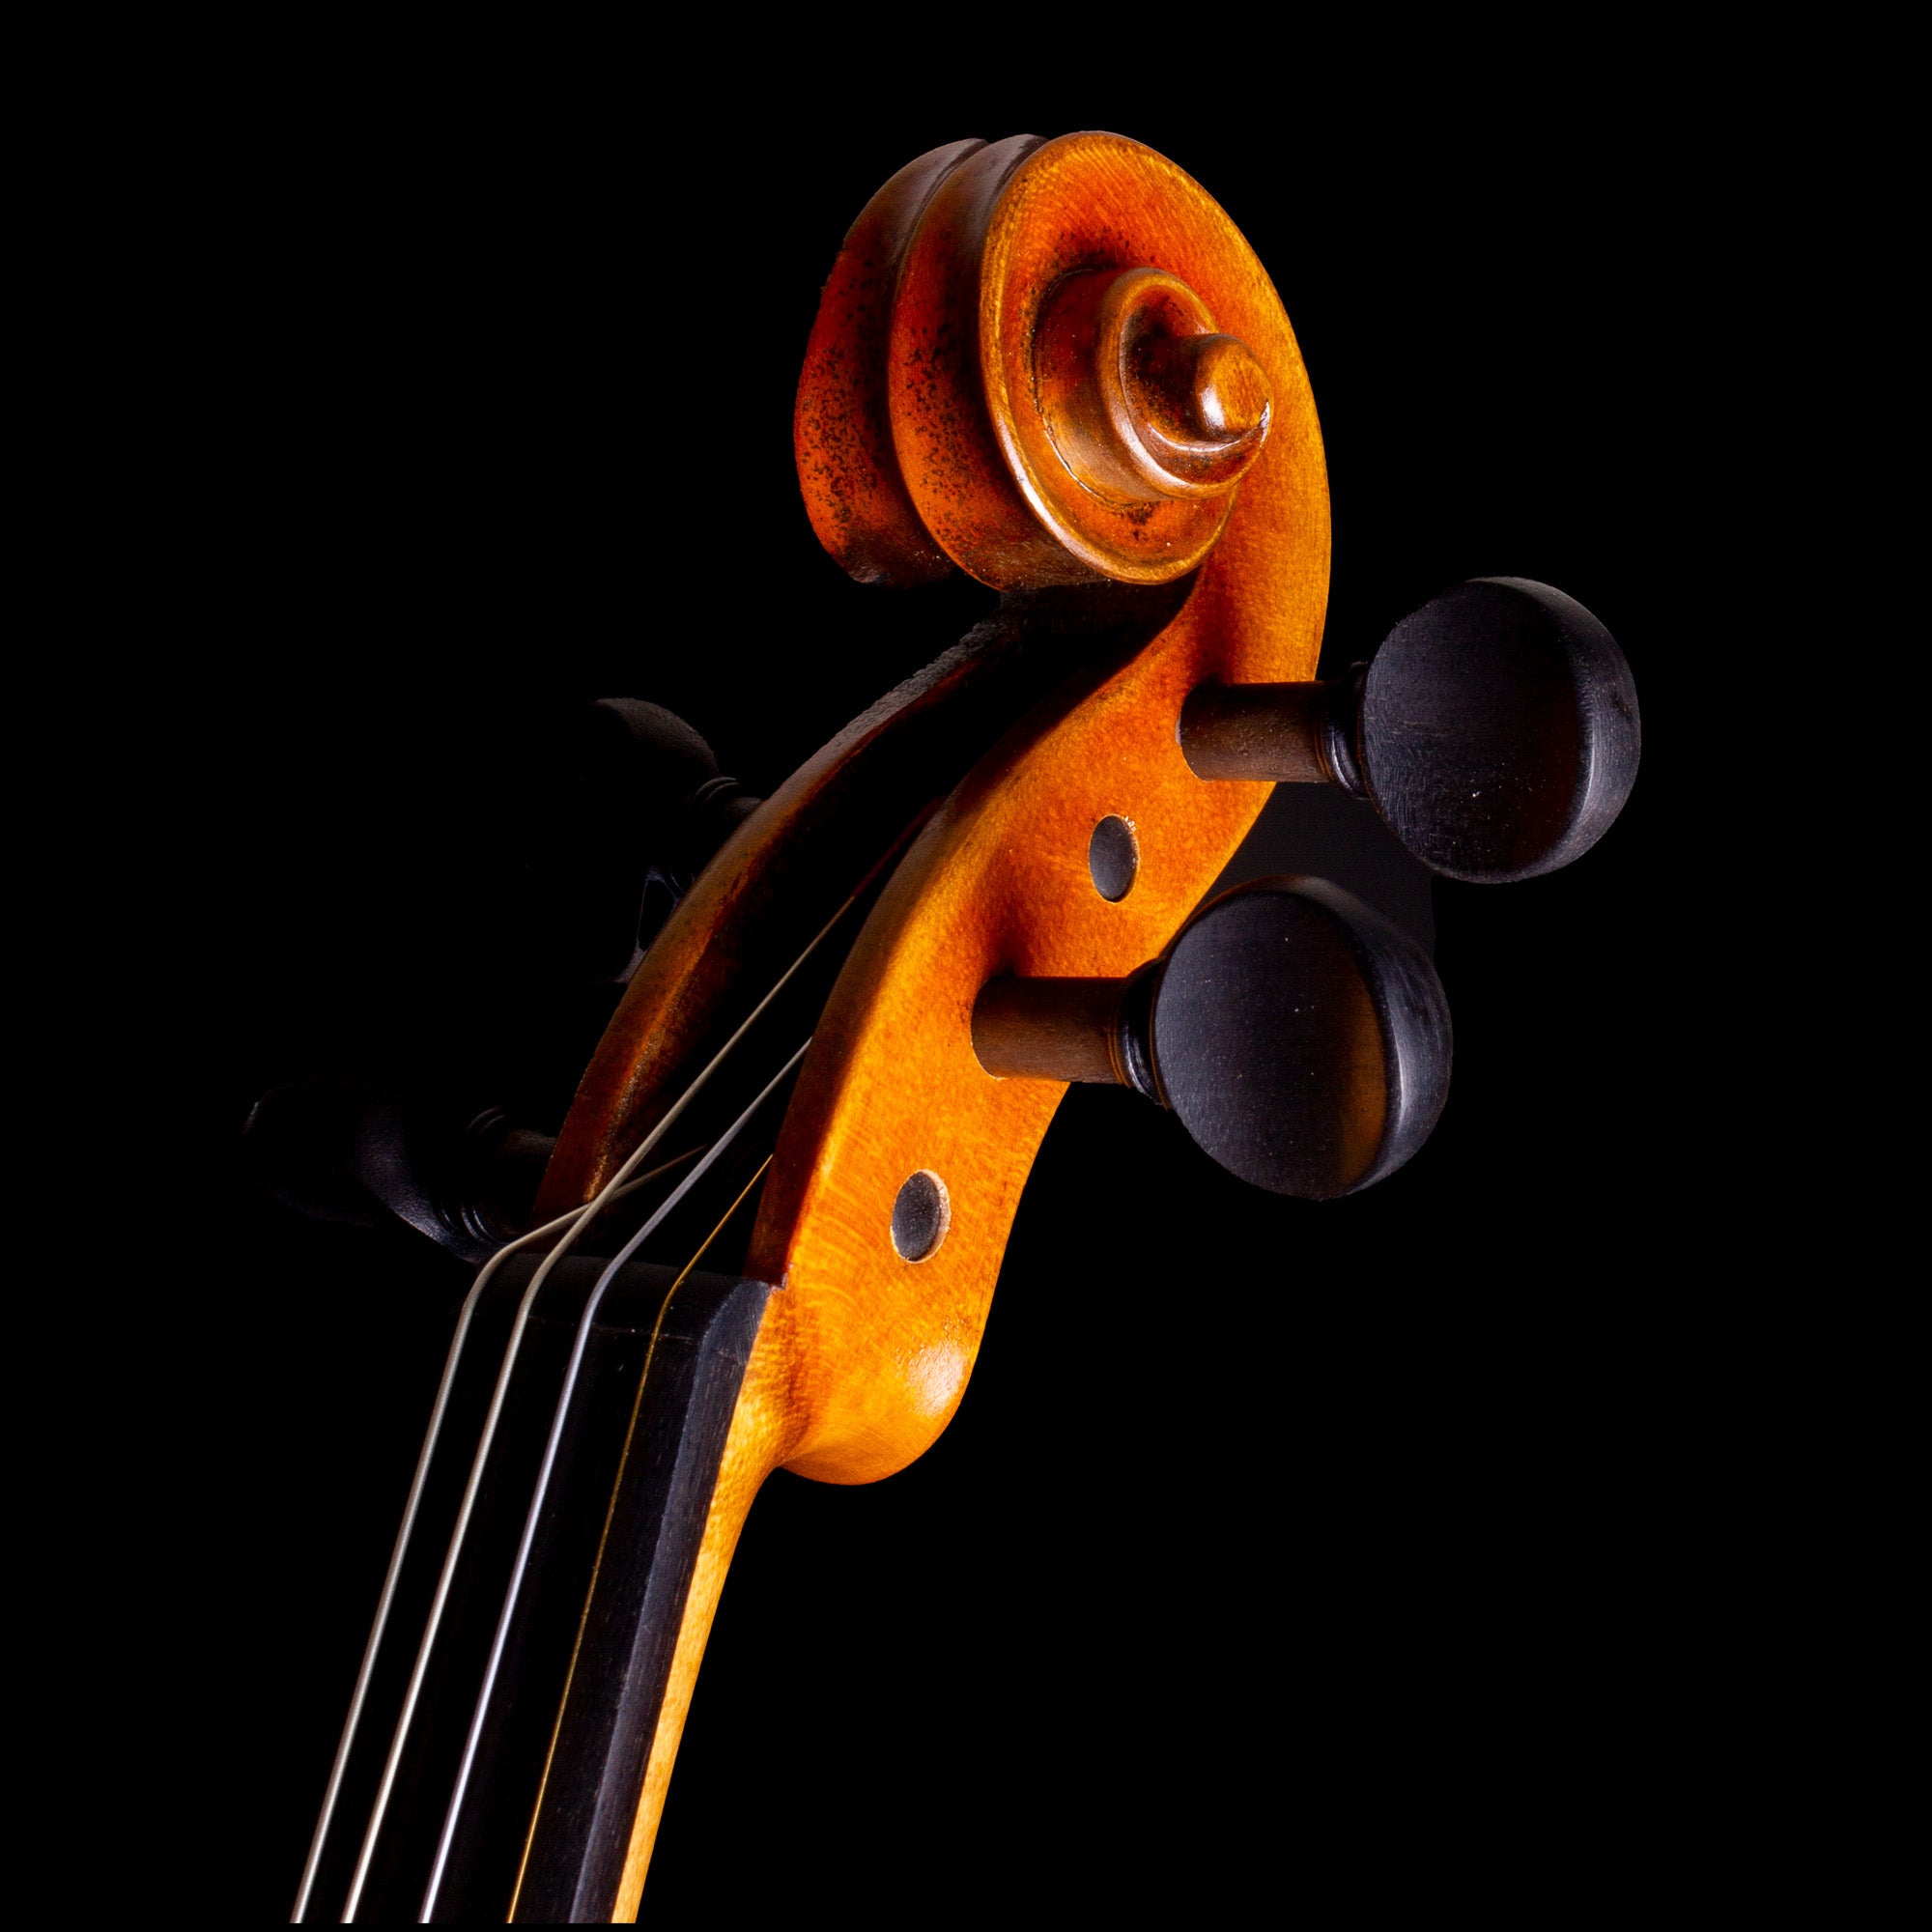 Master V Violin